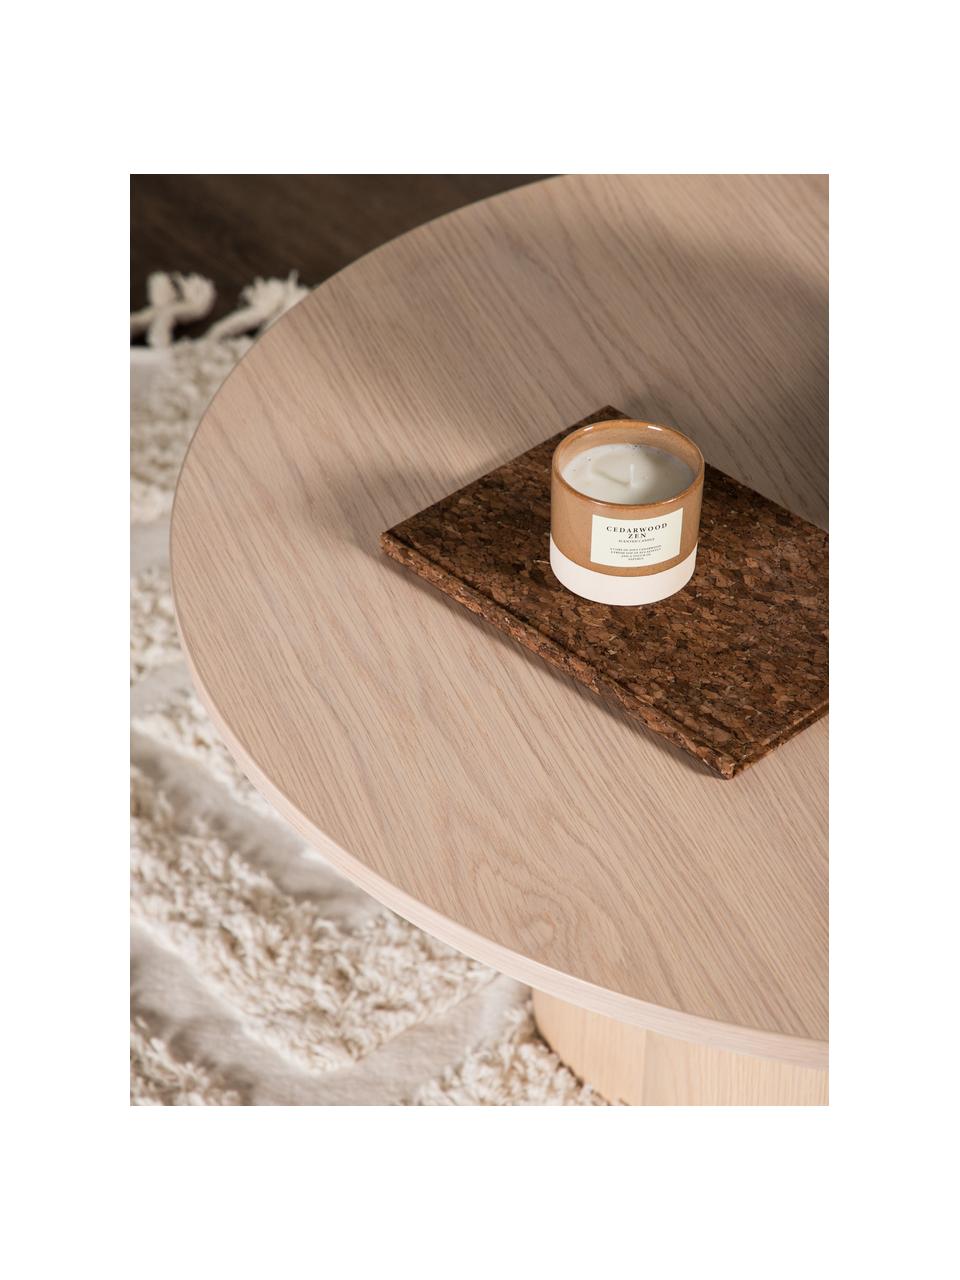 Kulatý dřevěný konferenční stolek Olivia, MDF deska (dřevovláknitá deska střední hustoty), MDF deska (dřevovláknitá deska střední hustoty), světle lakované, Ø 80 cm